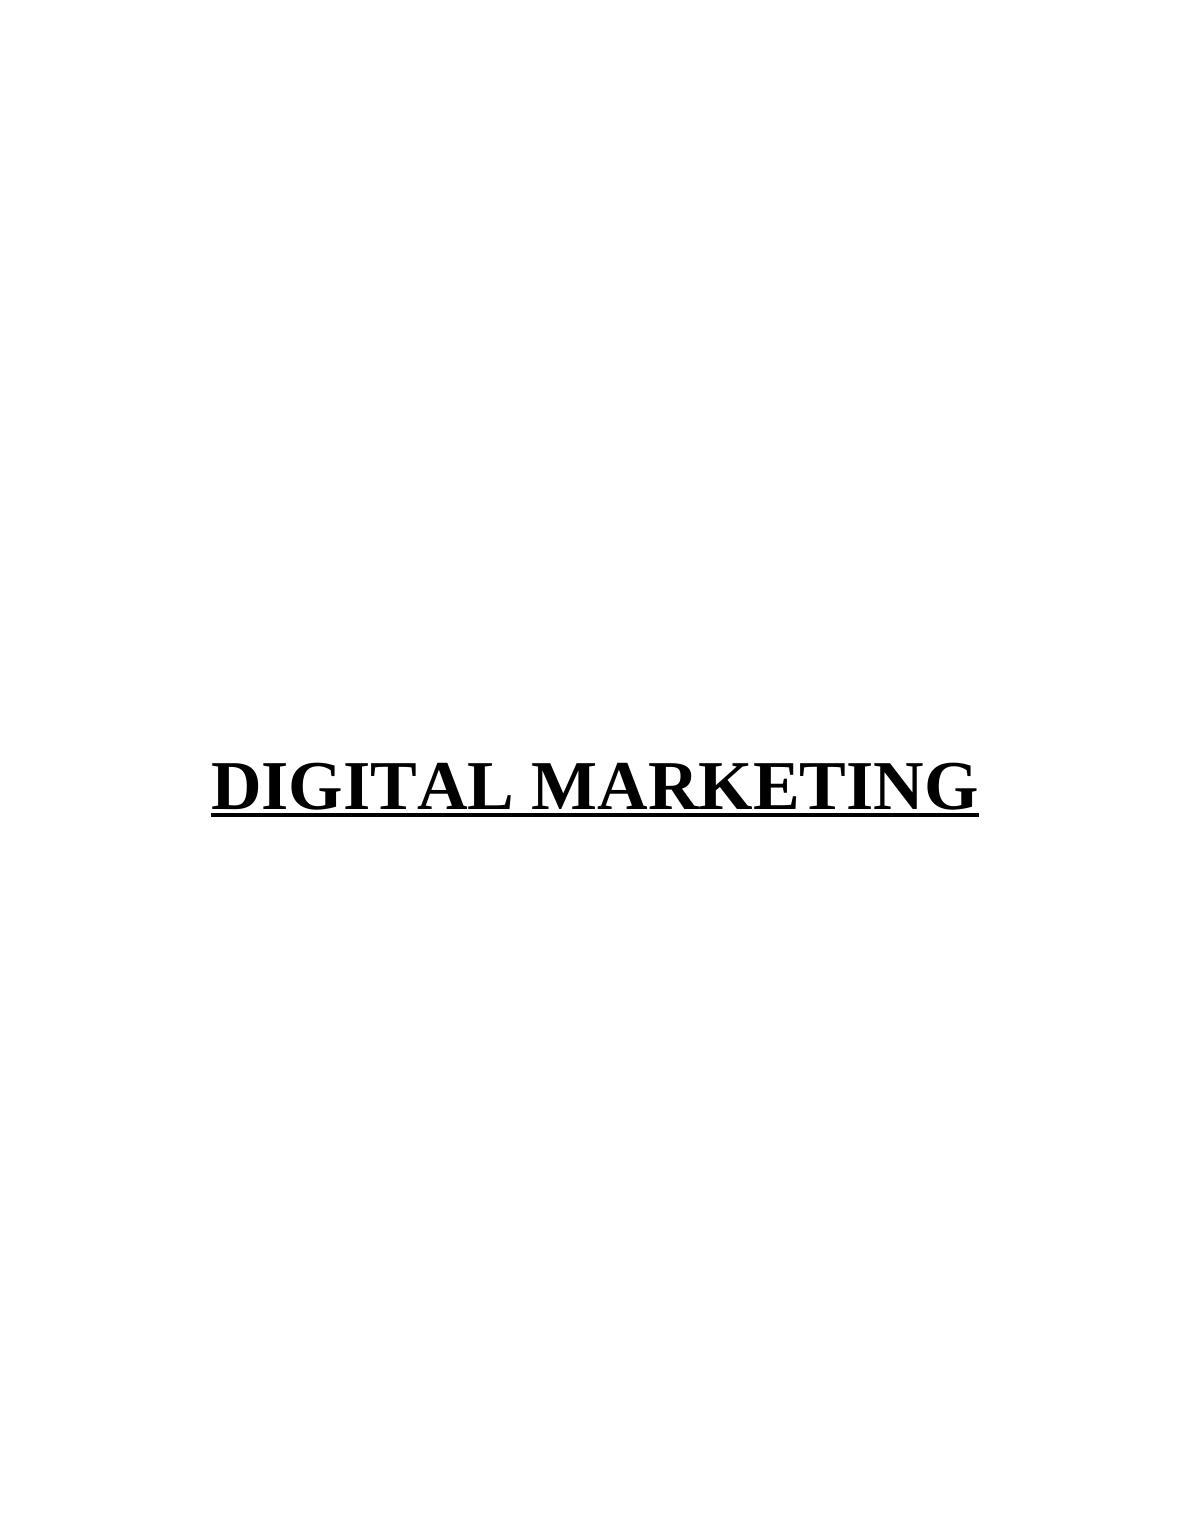 Digital Marketing at L'Oreal_1